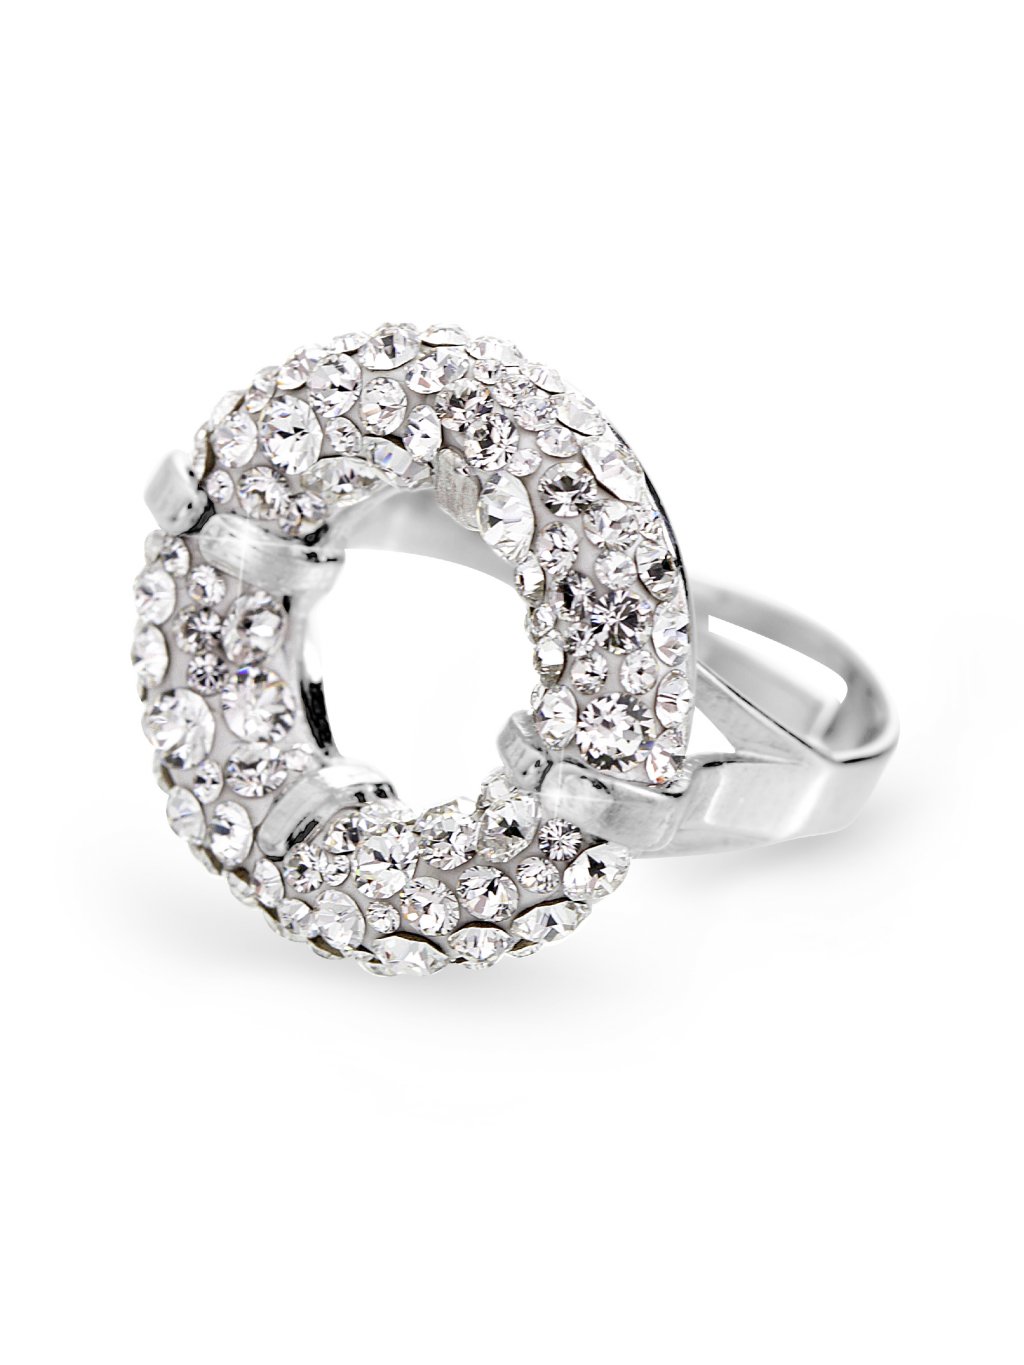 Stříbrný prsten round s kameny Swarovski Crystal - Sklo & Bižuterie CZ